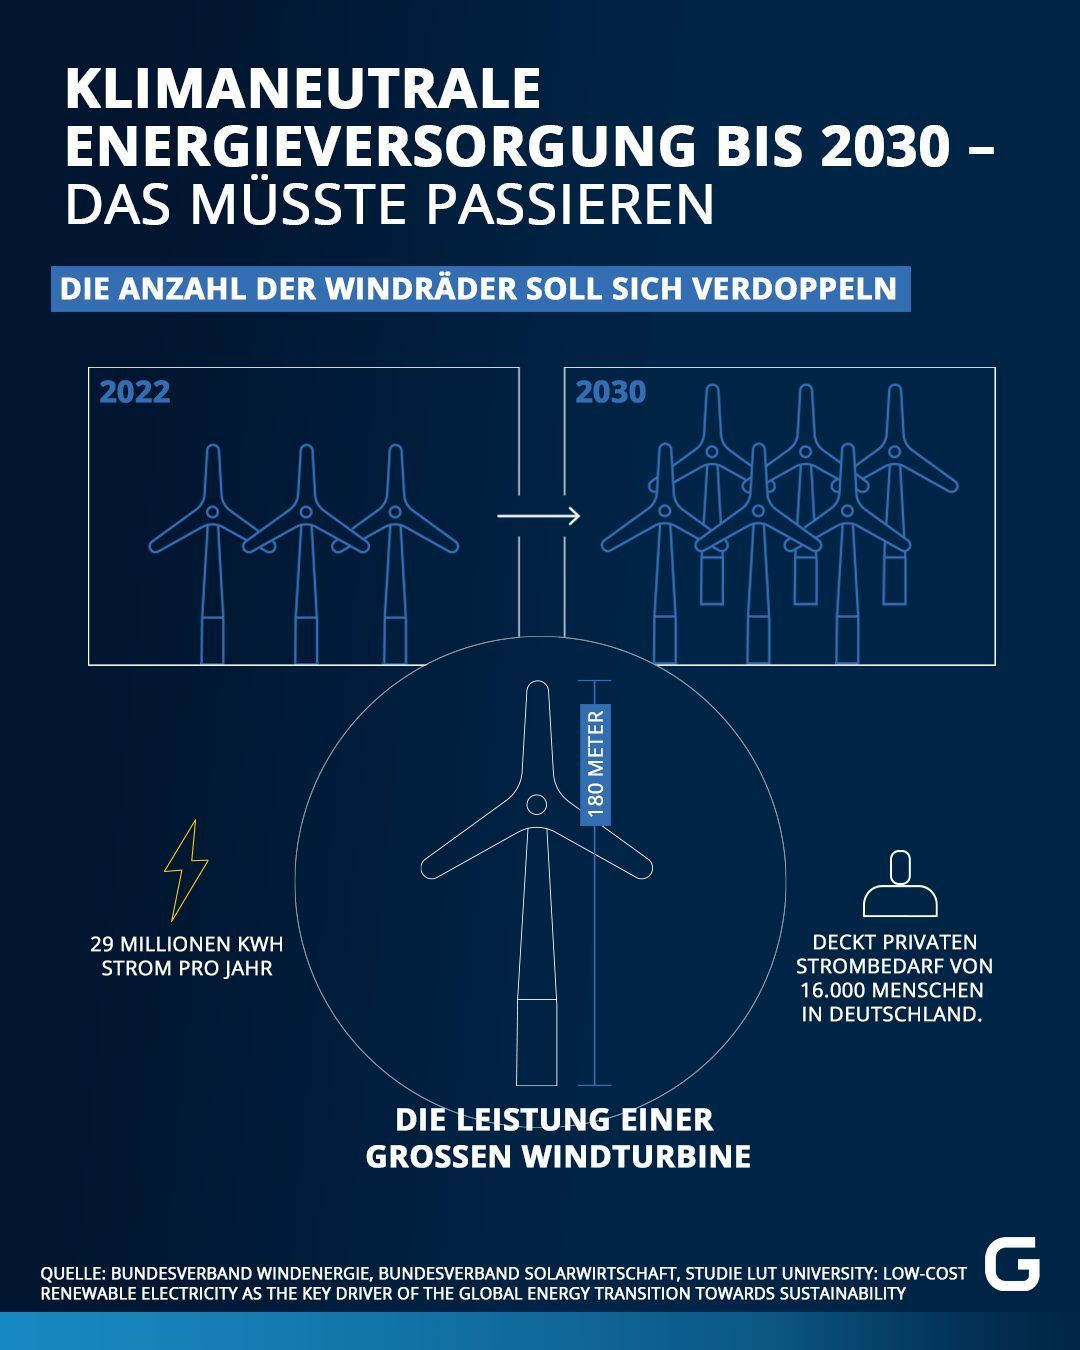 Klimaneutrale Energieversorgung bis 2030: Anzahl der Windräder verdoppeln